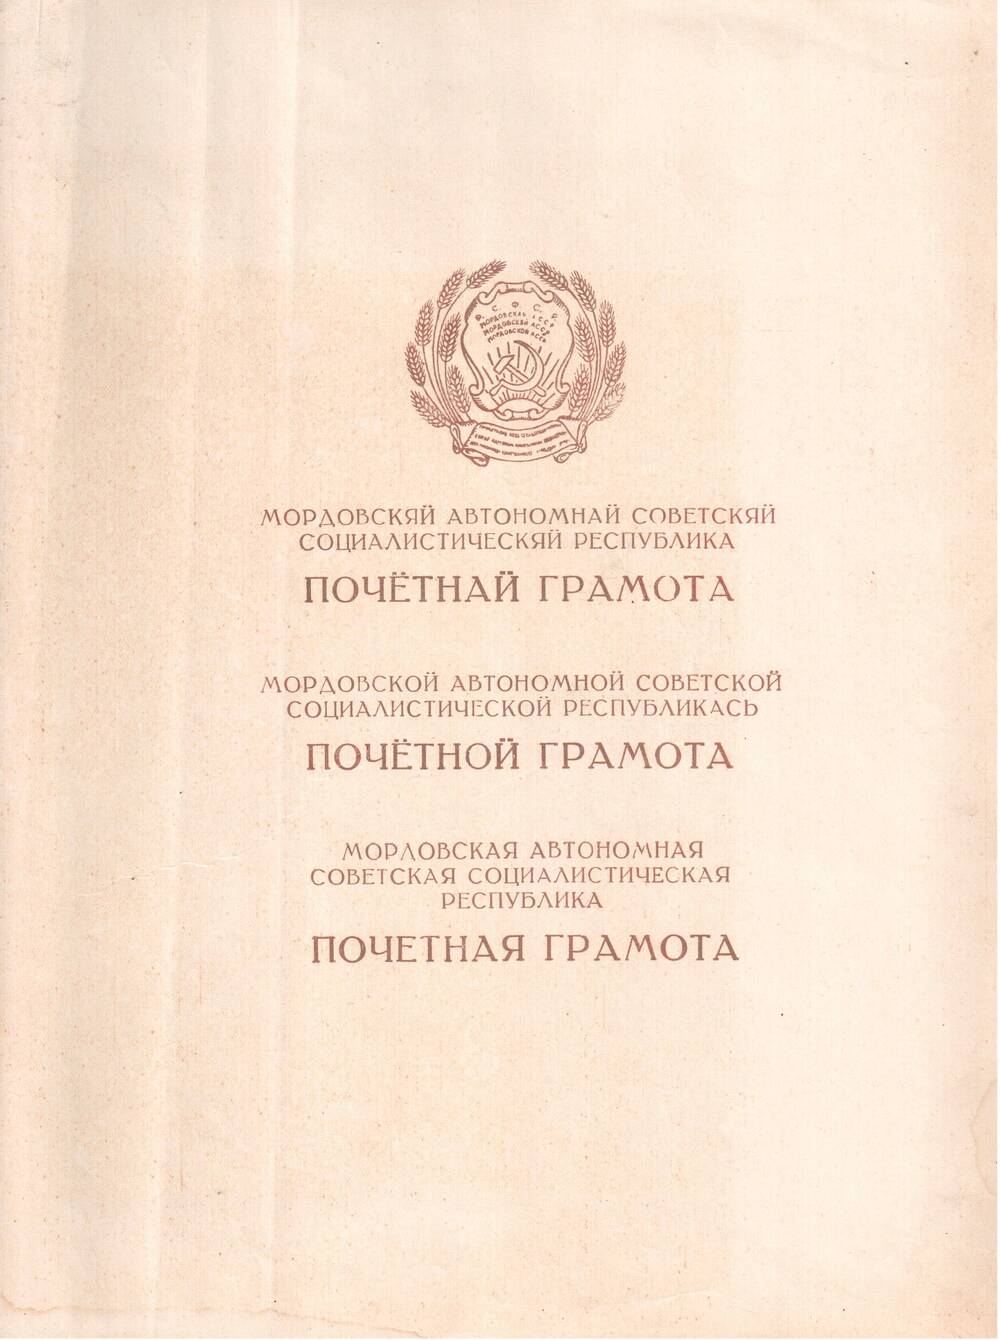 Почетная грамота за высокие показатели в выполнении служебного долга в рядах Гражданского Воздушного Флота Кругликову Евгению Ивановичу.